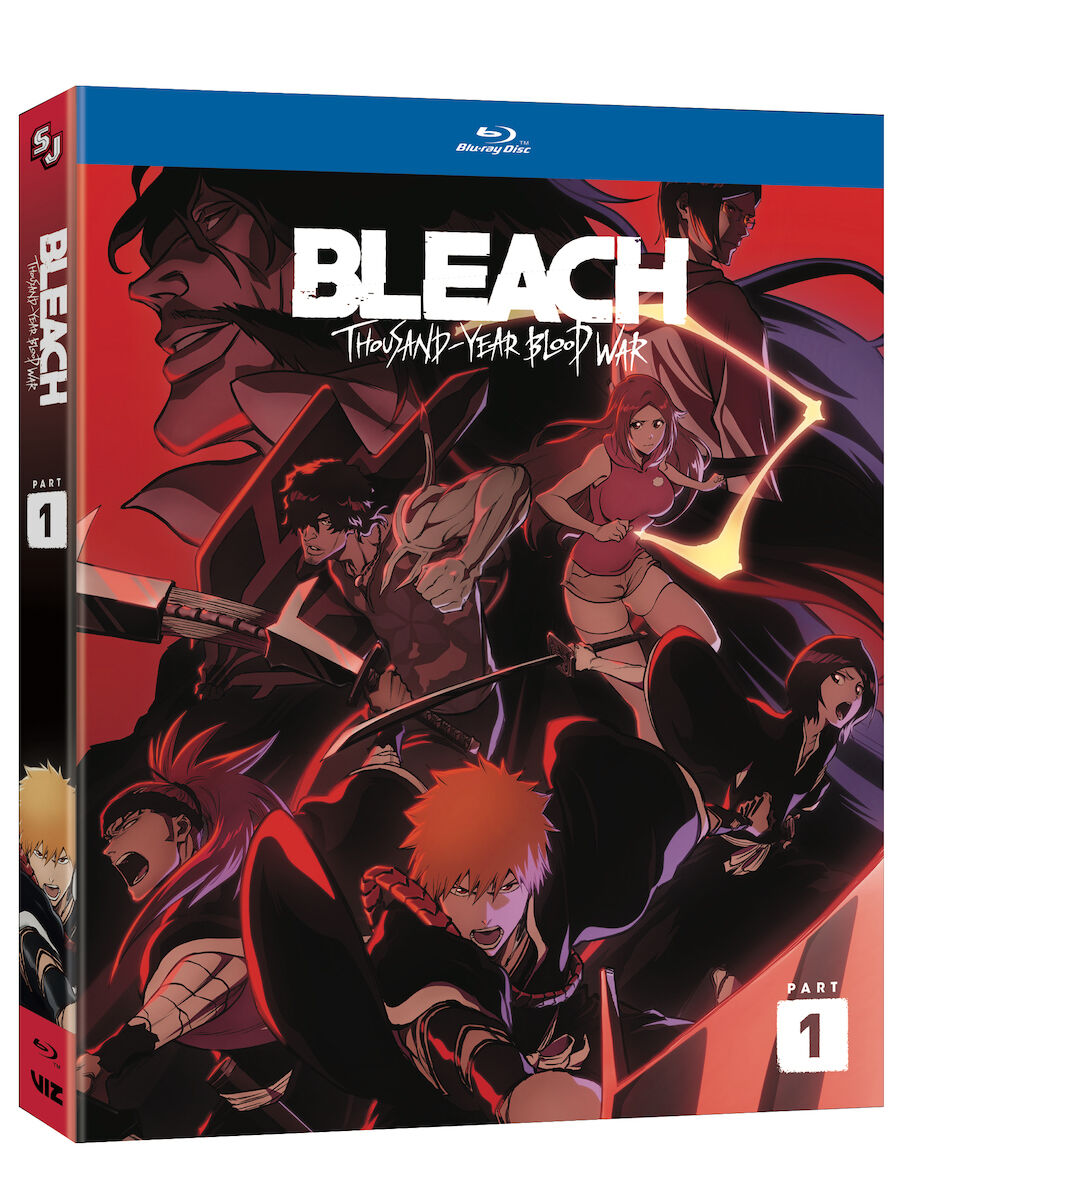 BLEACH - Thousand-Year Blood War Part 1 - Blu-ray | Crunchyroll Store